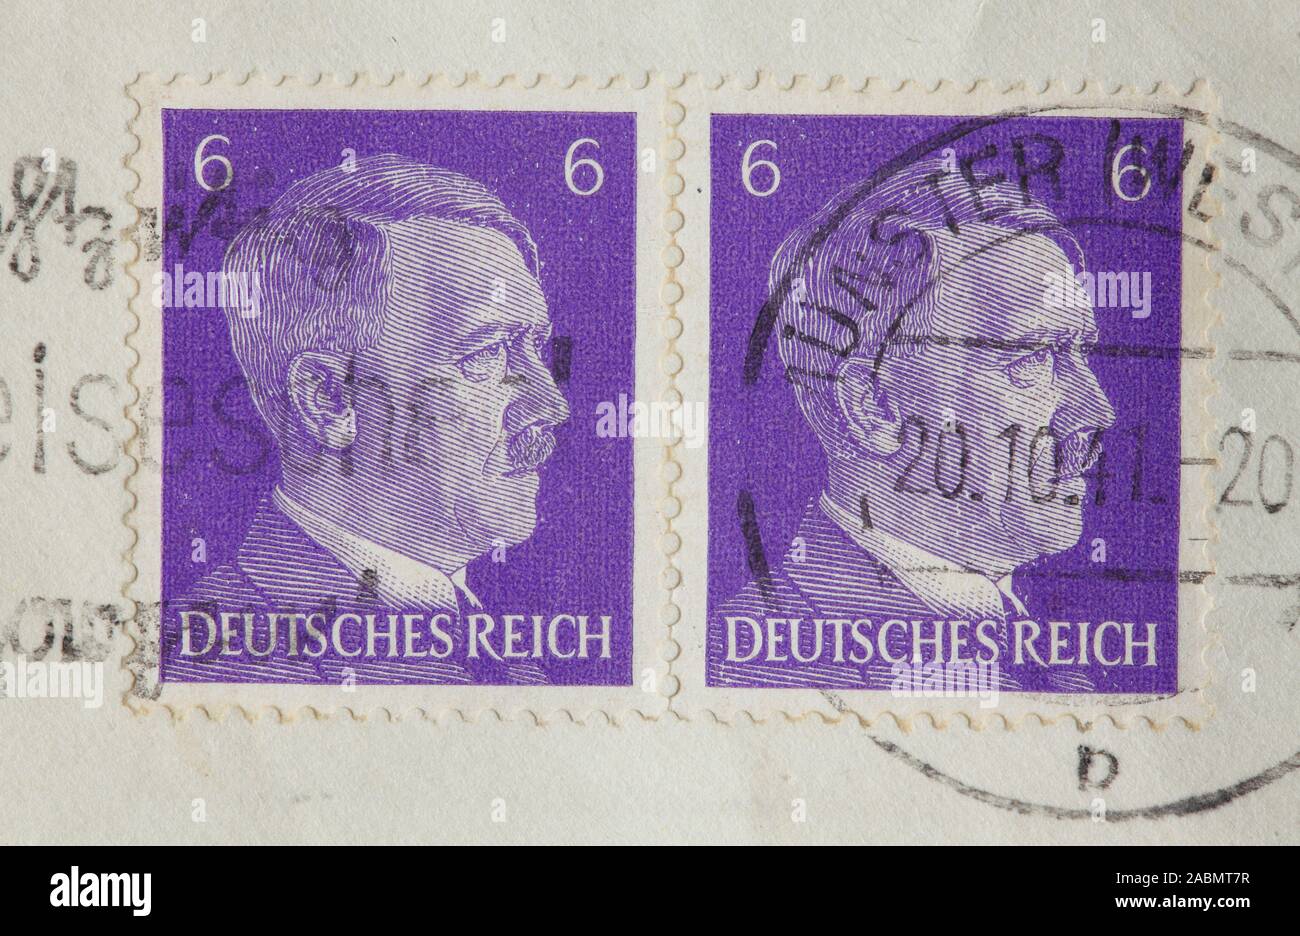 Abgestempelte Briefmarken Adolf Hitler auf einem Briefumschlag, Deutsches Reich Foto Stock